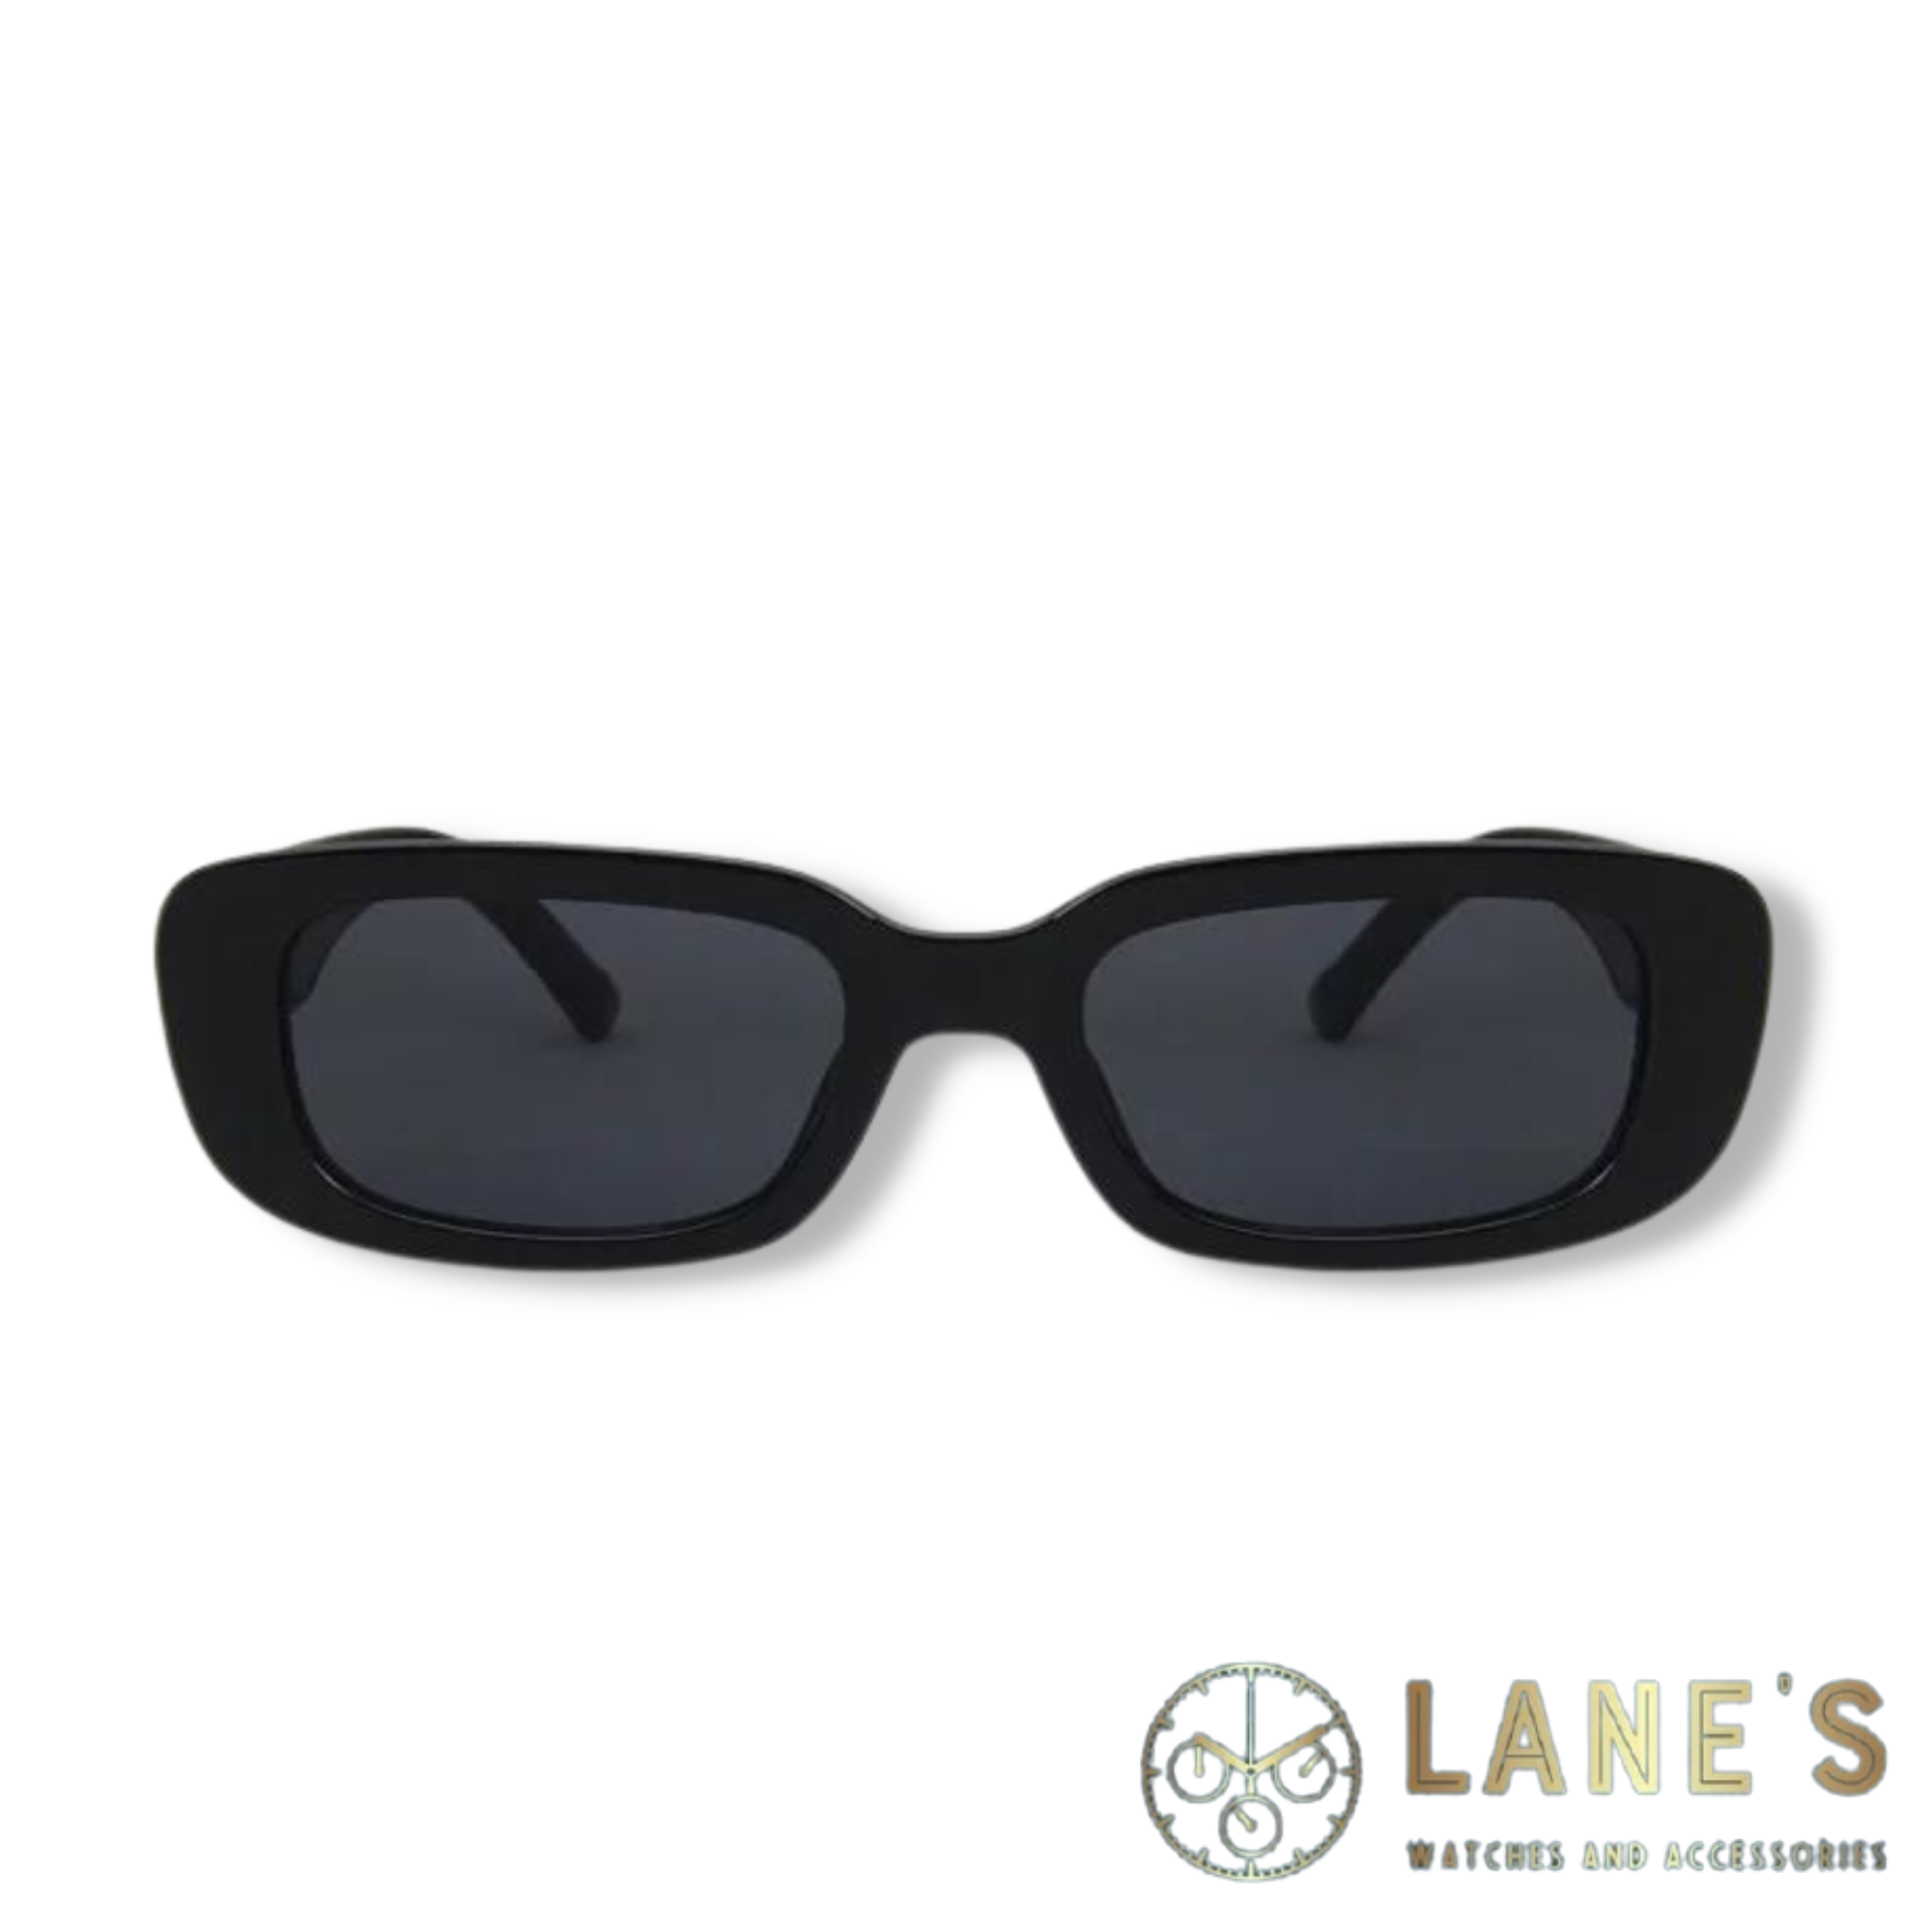 Black Retro Rectangle Unisex Sunglasses